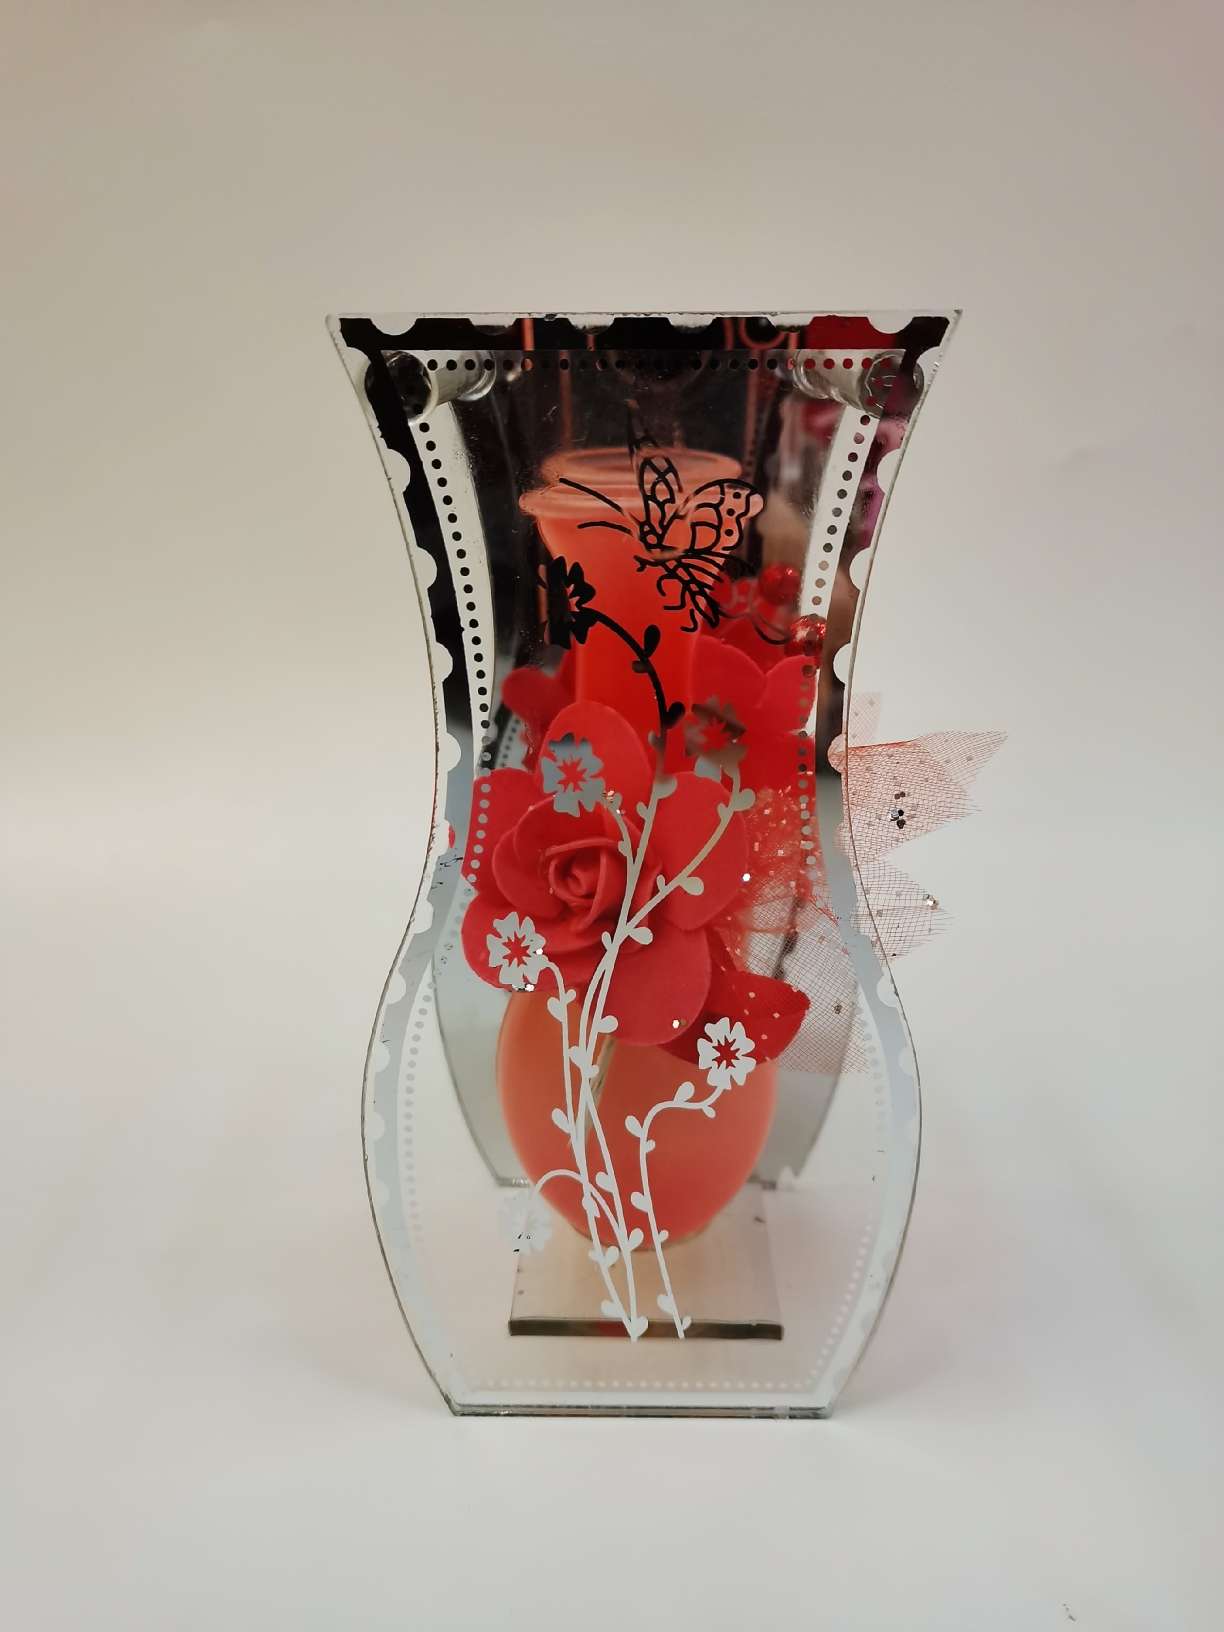 法式风格透明玻璃花瓶 装饰花瓶 简约现代家居摆设 艺术品收藏品